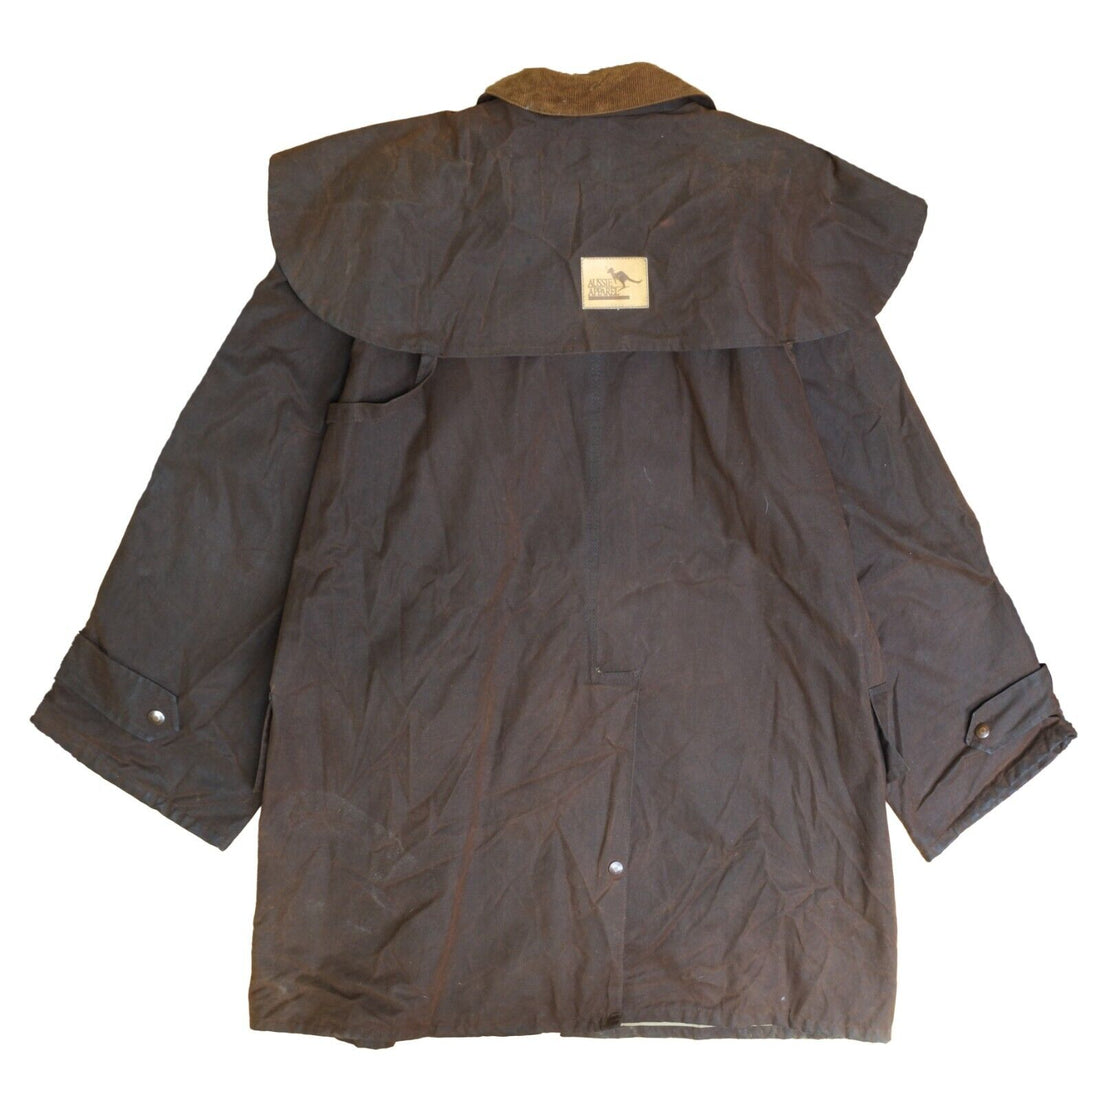 Vintage Aussie Apparel Wax Coat Jacket Size XL Brown